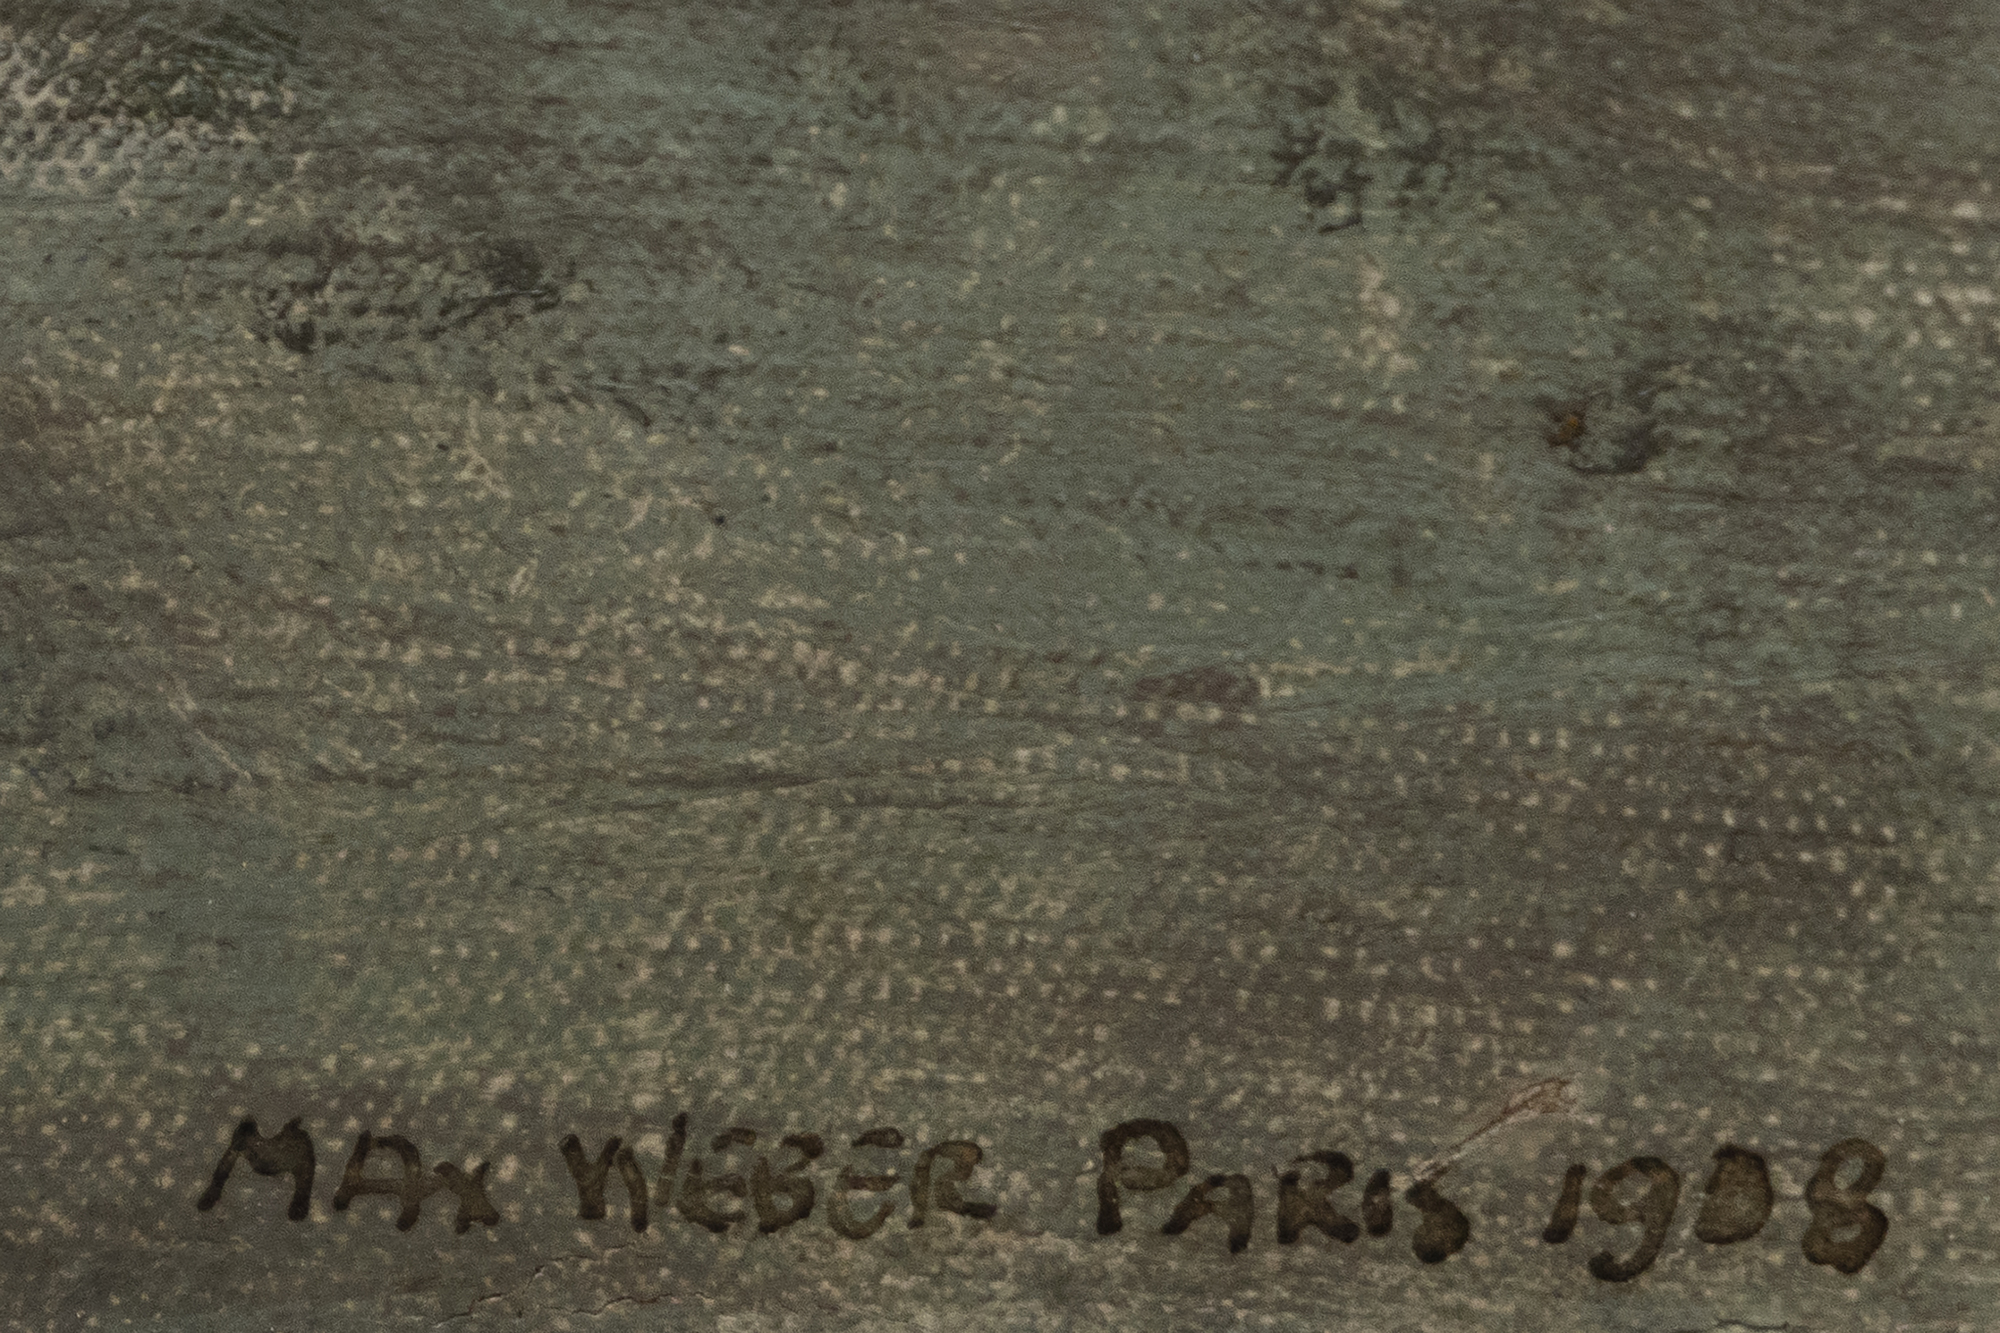 Max Weber zog 1905 nach Paris, als die Stadt das Epizentrum der künstlerischen Innovation war. Seine frühen Werke zeigen den gleichzeitigen Einfluss der kühnen Farbpalette des Fauvismus und der fragmentierten Darstellung der Realität durch den Kubismus. Weber imitierte diese Stile jedoch nicht einfach, sondern integrierte und interpretierte sie neu, um etwas Eigenes zu schaffen. Webers Bedeutung liegt nicht nur in seinen abstrakten Werken, sondern auch in seiner Rolle als Vermittler von Ideen der Moderne. Weber spielte eine entscheidende Rolle im transatlantischen Dialog, der die Entwicklung der amerikanischen Kunst im 20. Seine Darstellungen von Frauenfiguren stellen eine Synthese aus Abstraktion und Gegenständlichkeit dar, die das Wesen seiner Sujets einfängt und sich von den traditionellen figurativen Werken löst.